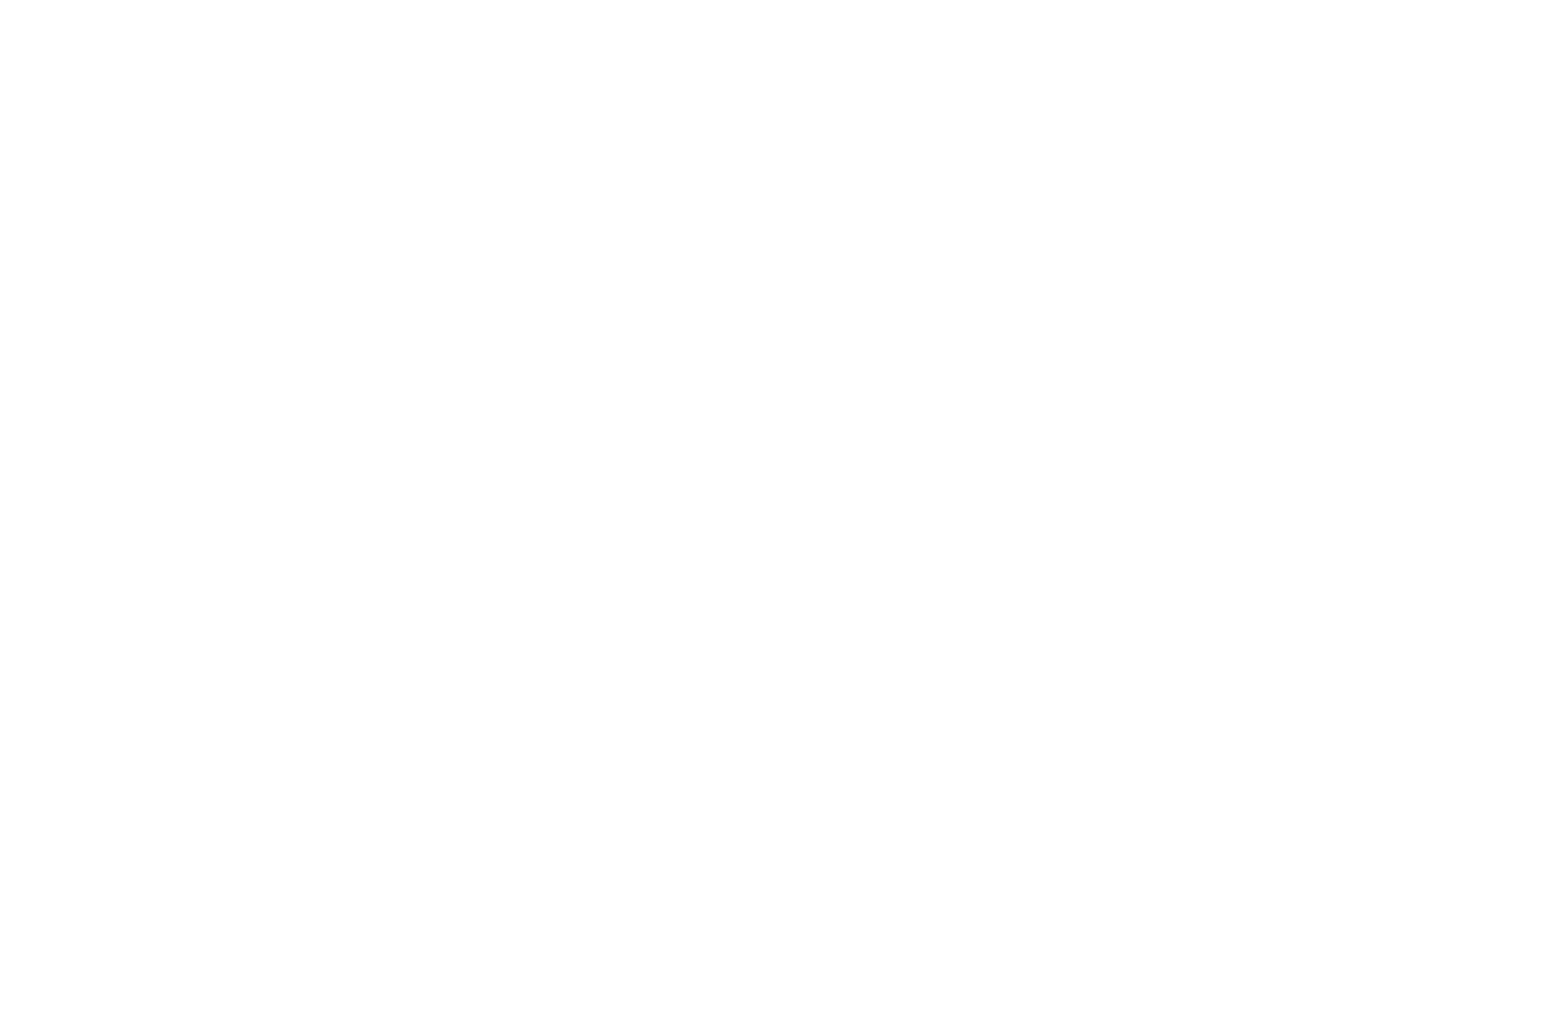 Warehouses De Pauw logo pour fonds sombres (PNG transparent)